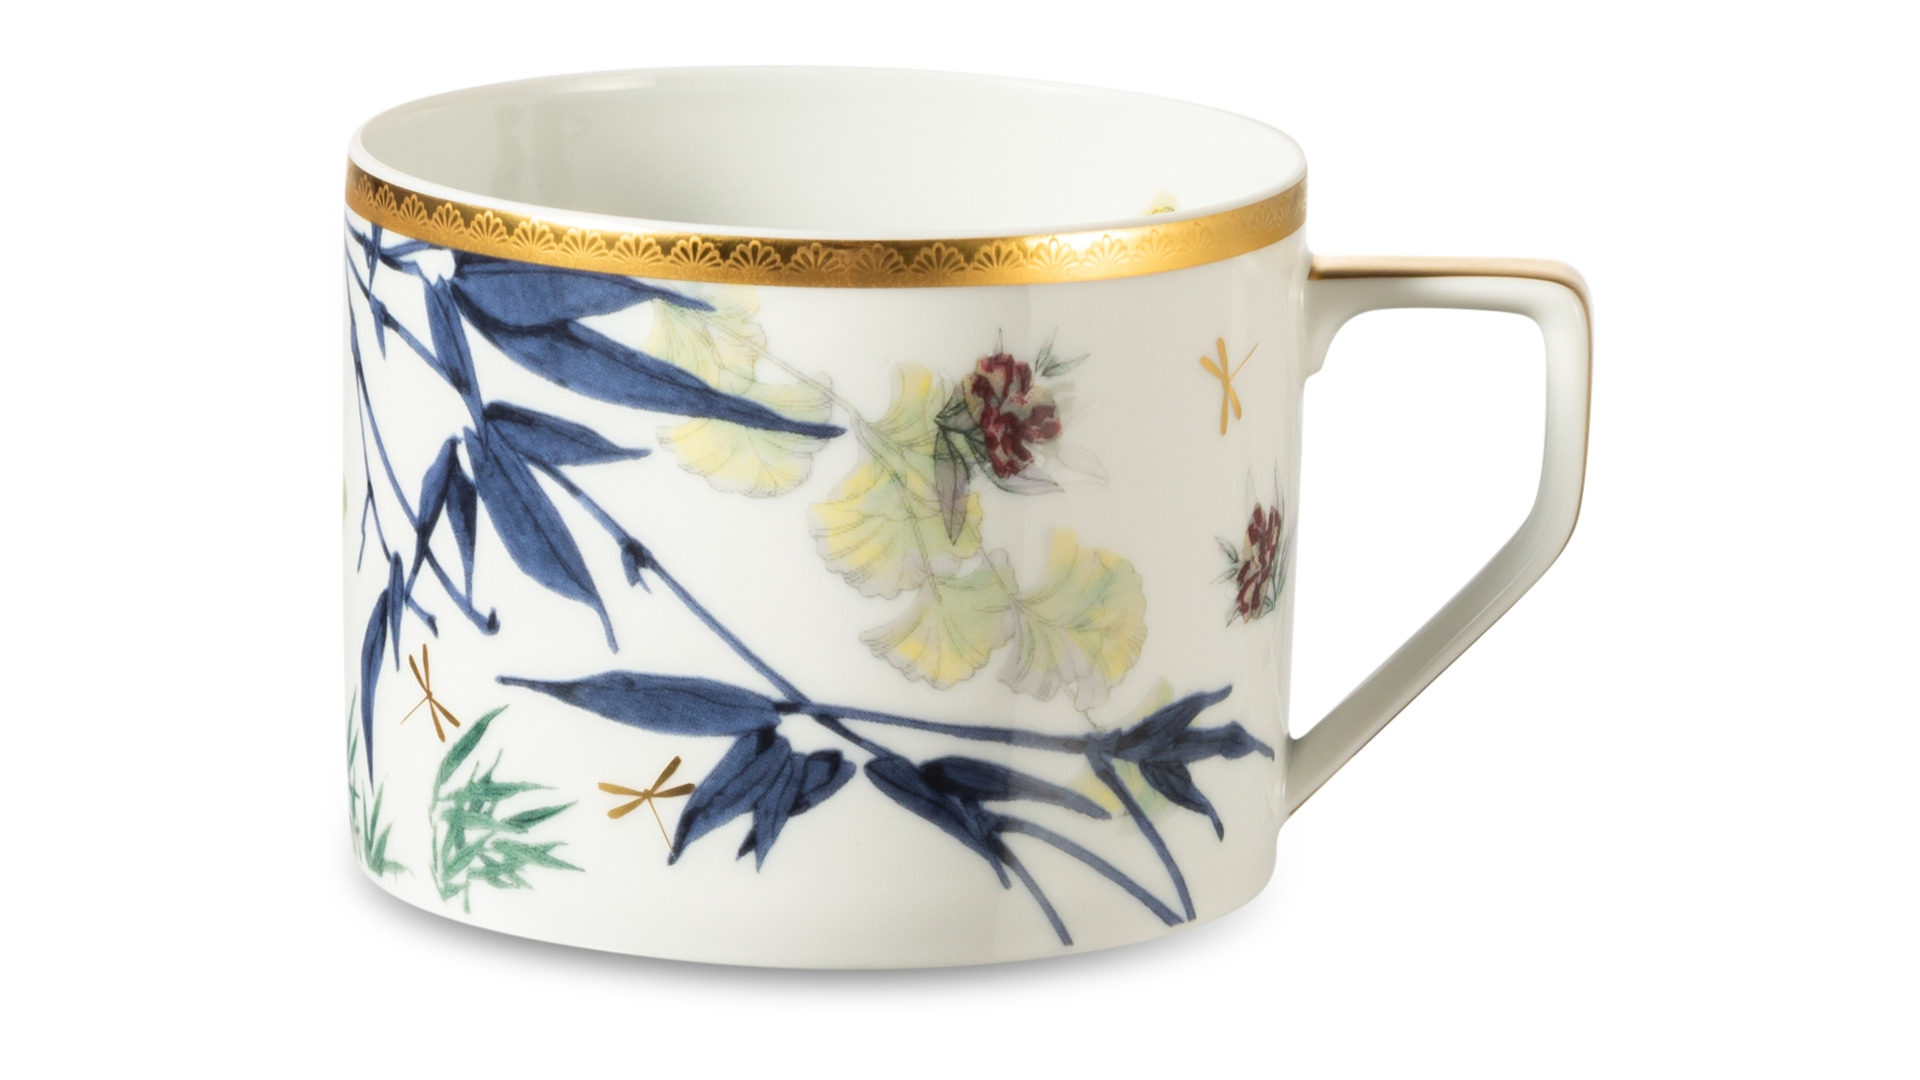 Чашка чайная с блюдцем Rosenthal Турандот 320 мл, фарфор, белый, золотой кант